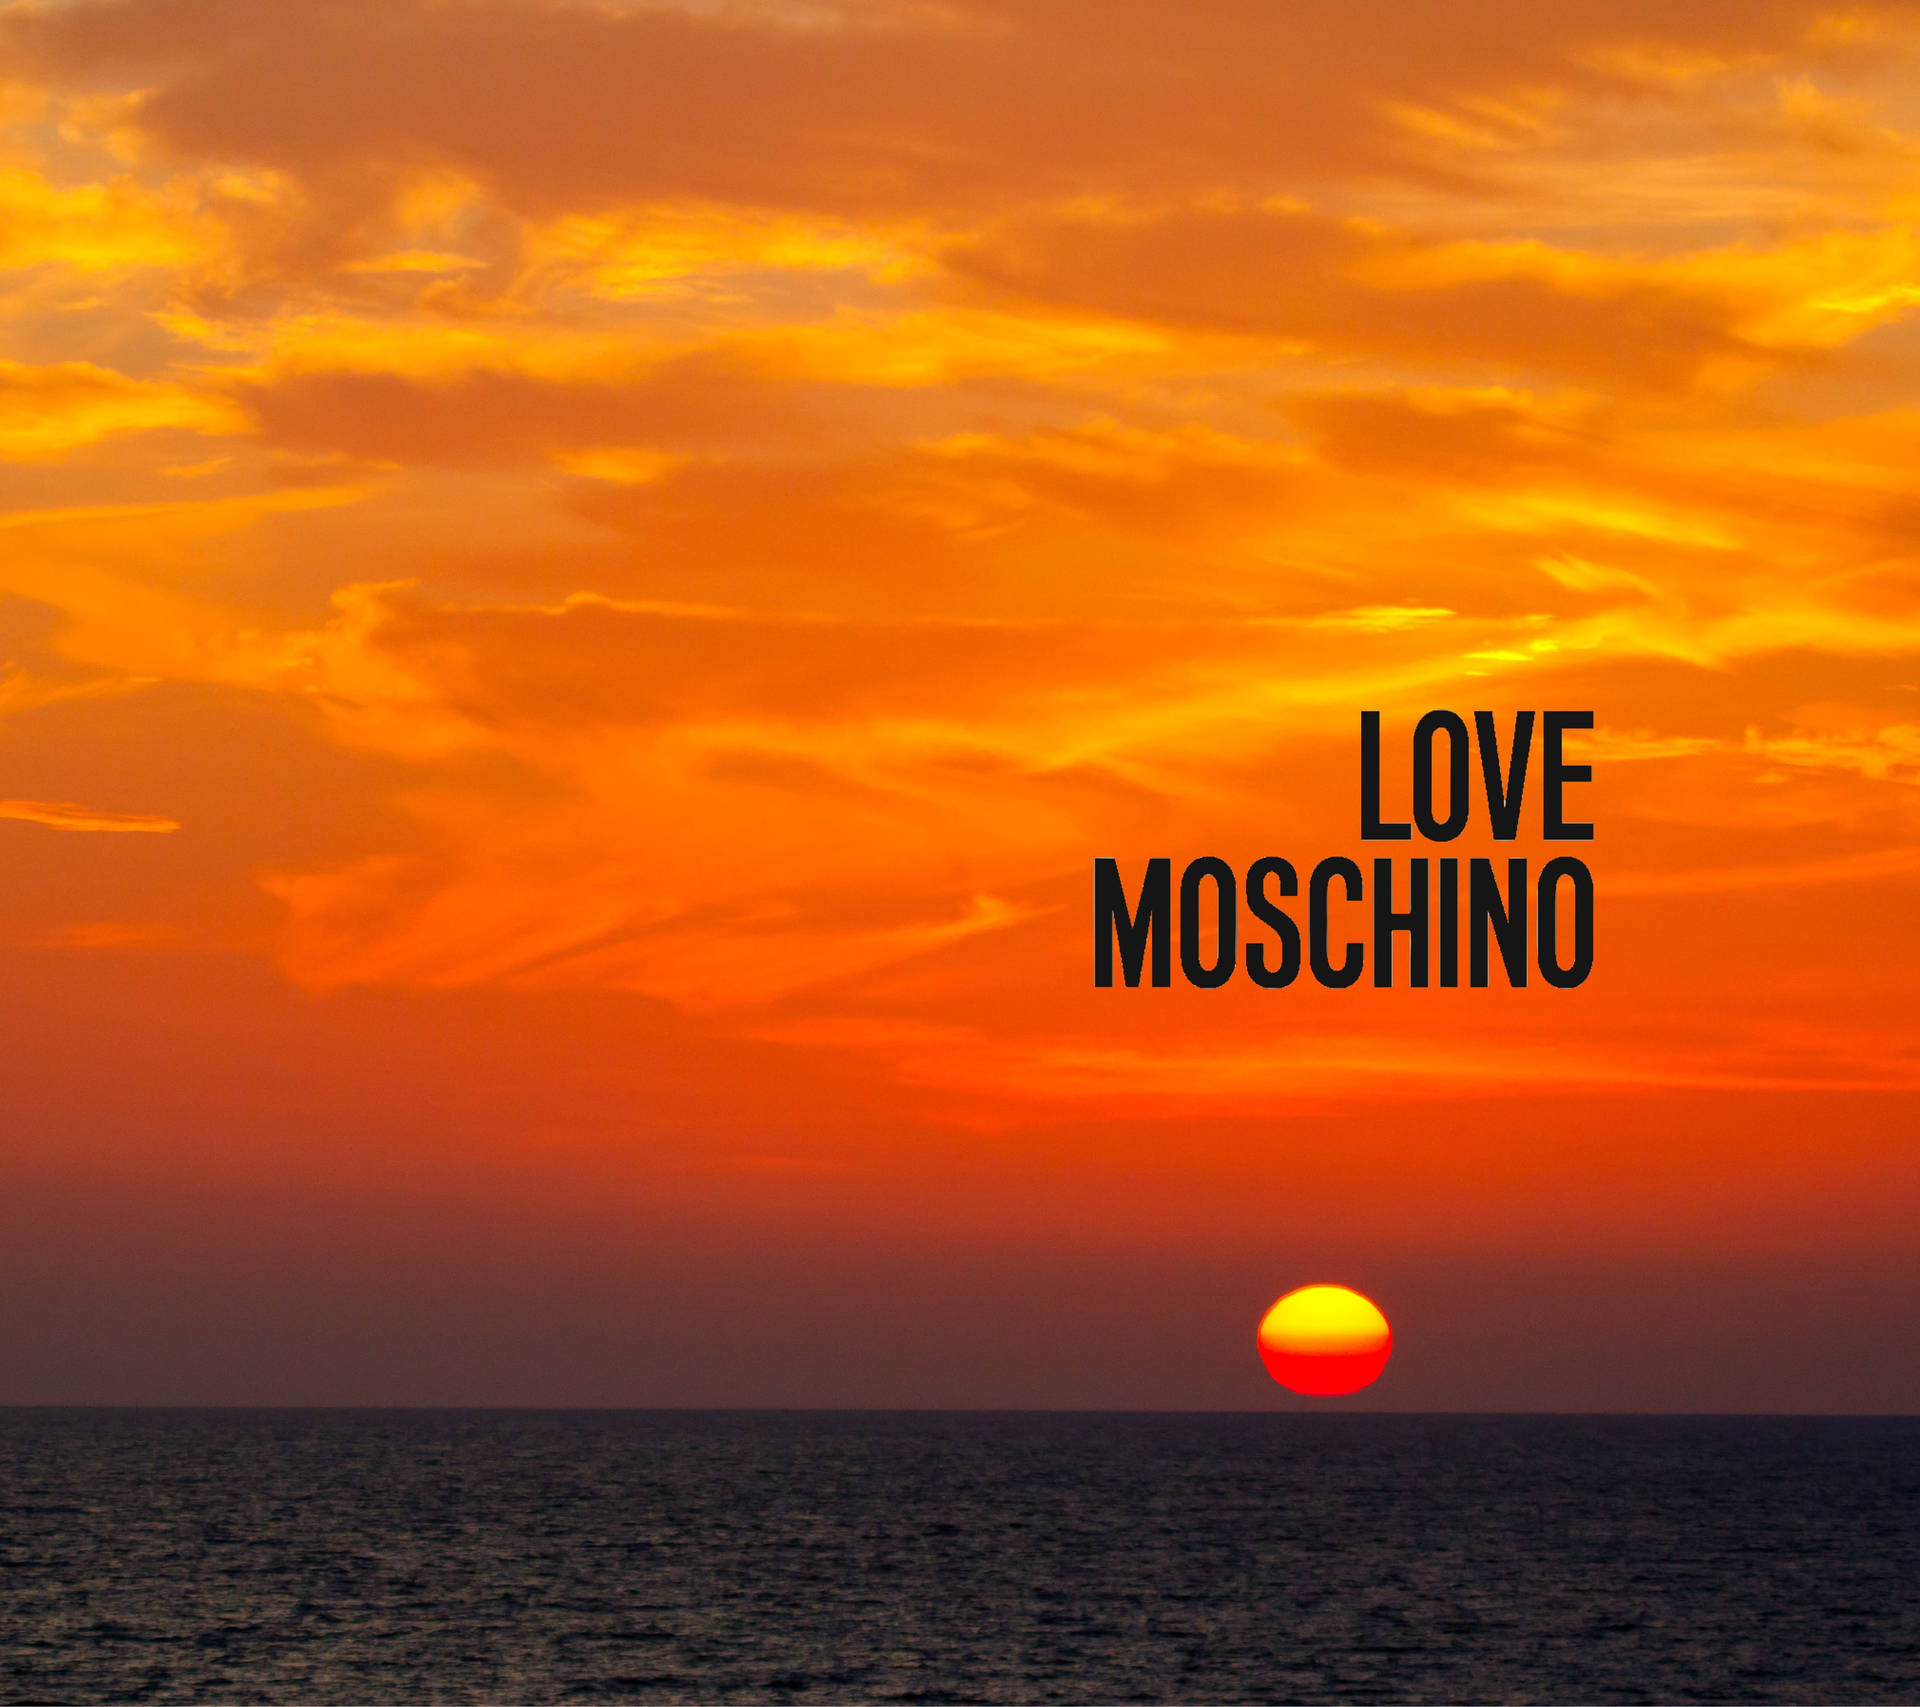 Love Moschino Sunset Wallpaper